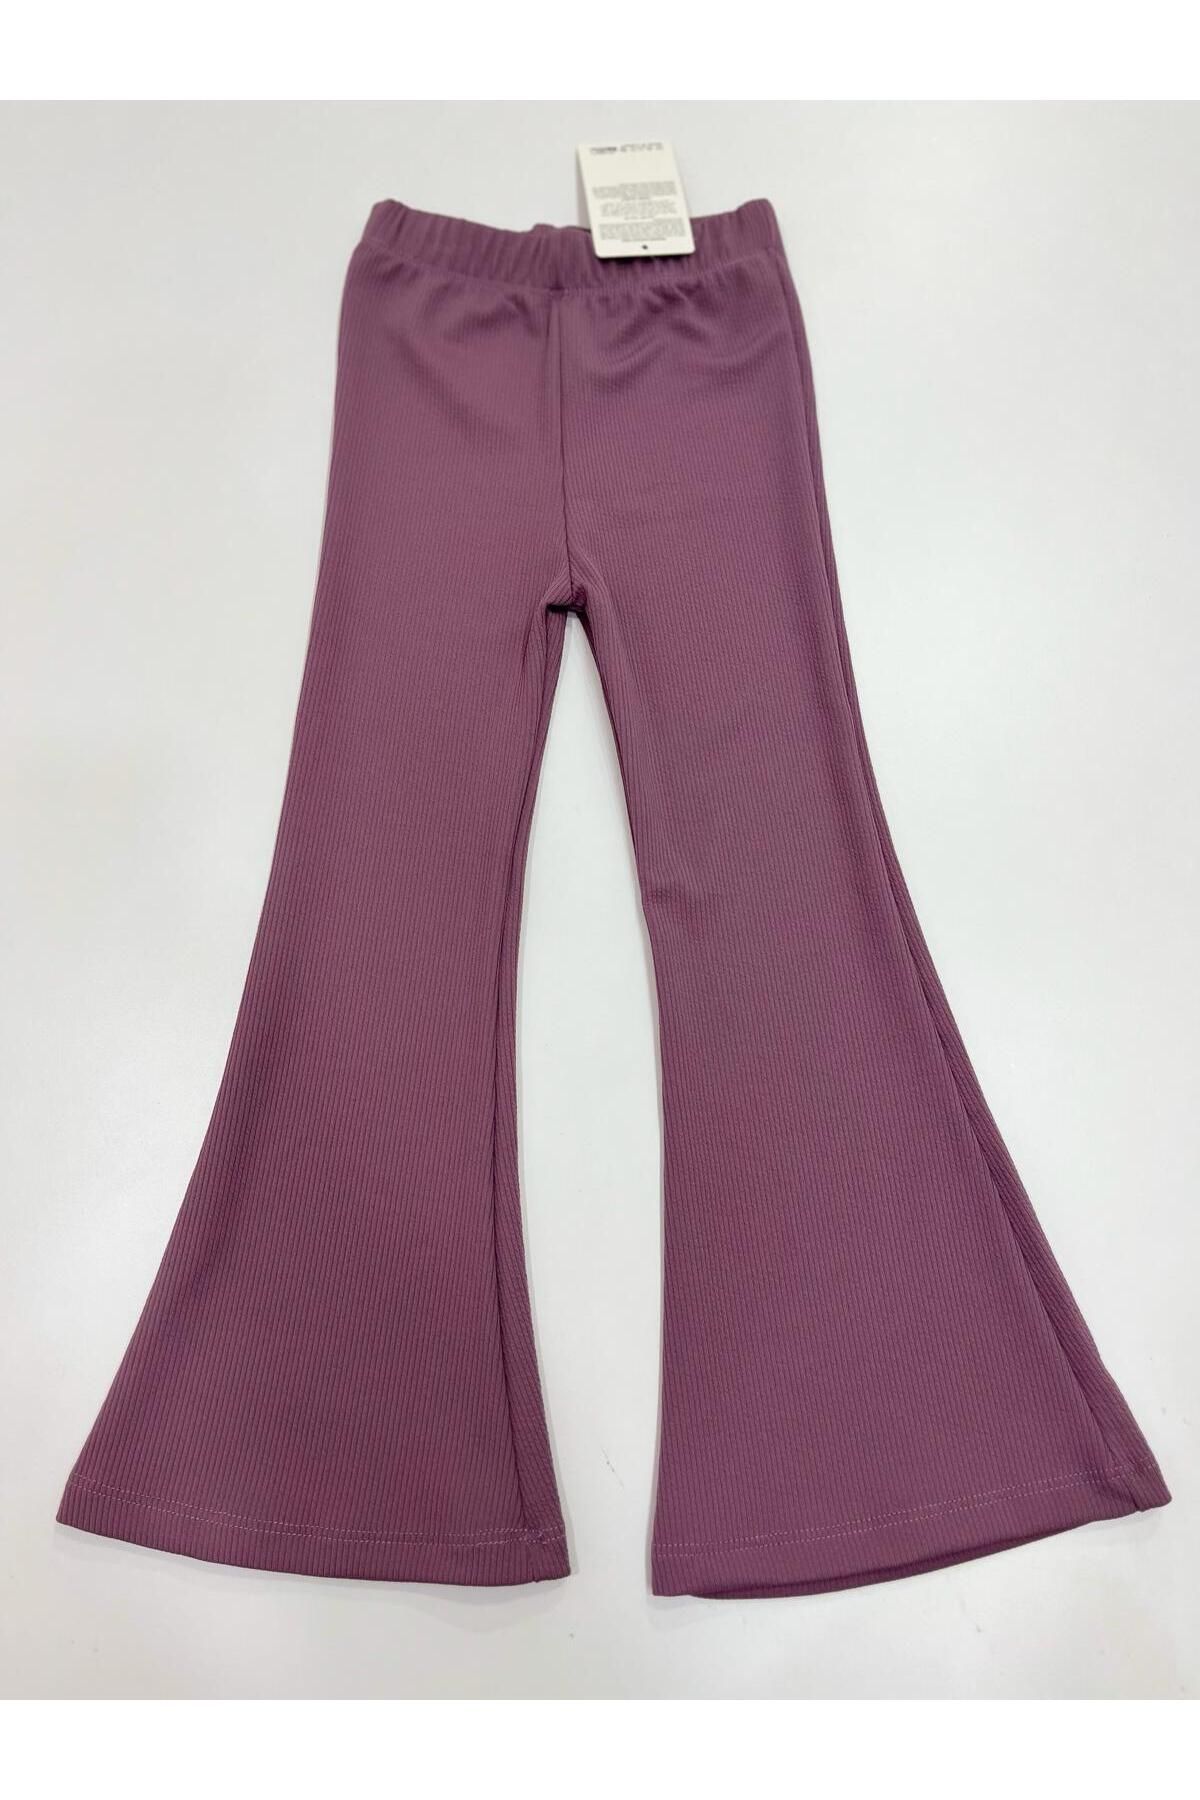 Esterella fitilli düz renk mevsimlik pantolon/ örme kumaş/ ispanyol bol paça esnek kız pantolon